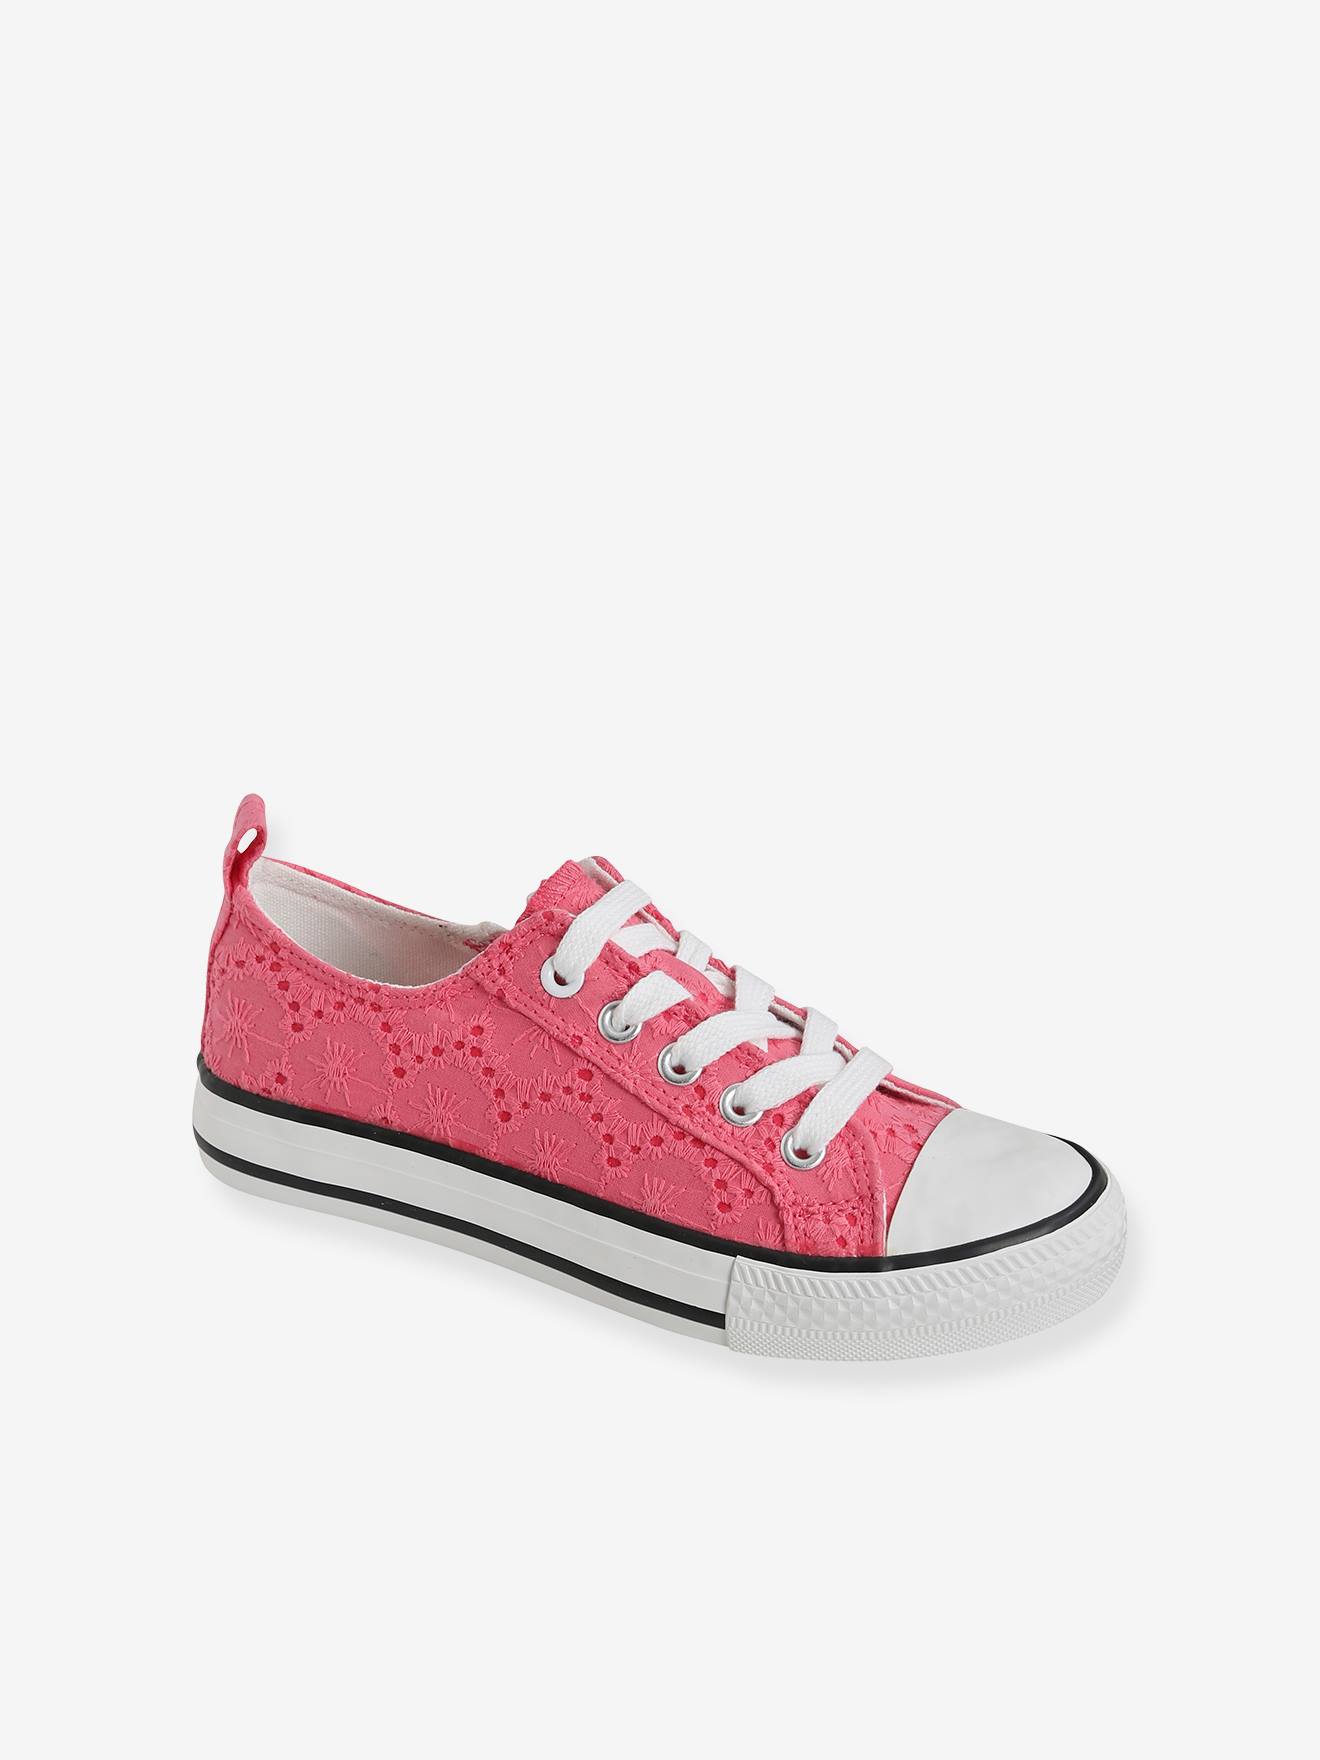 Zapatillas fantasía, para niña rosa - Vertbaudet